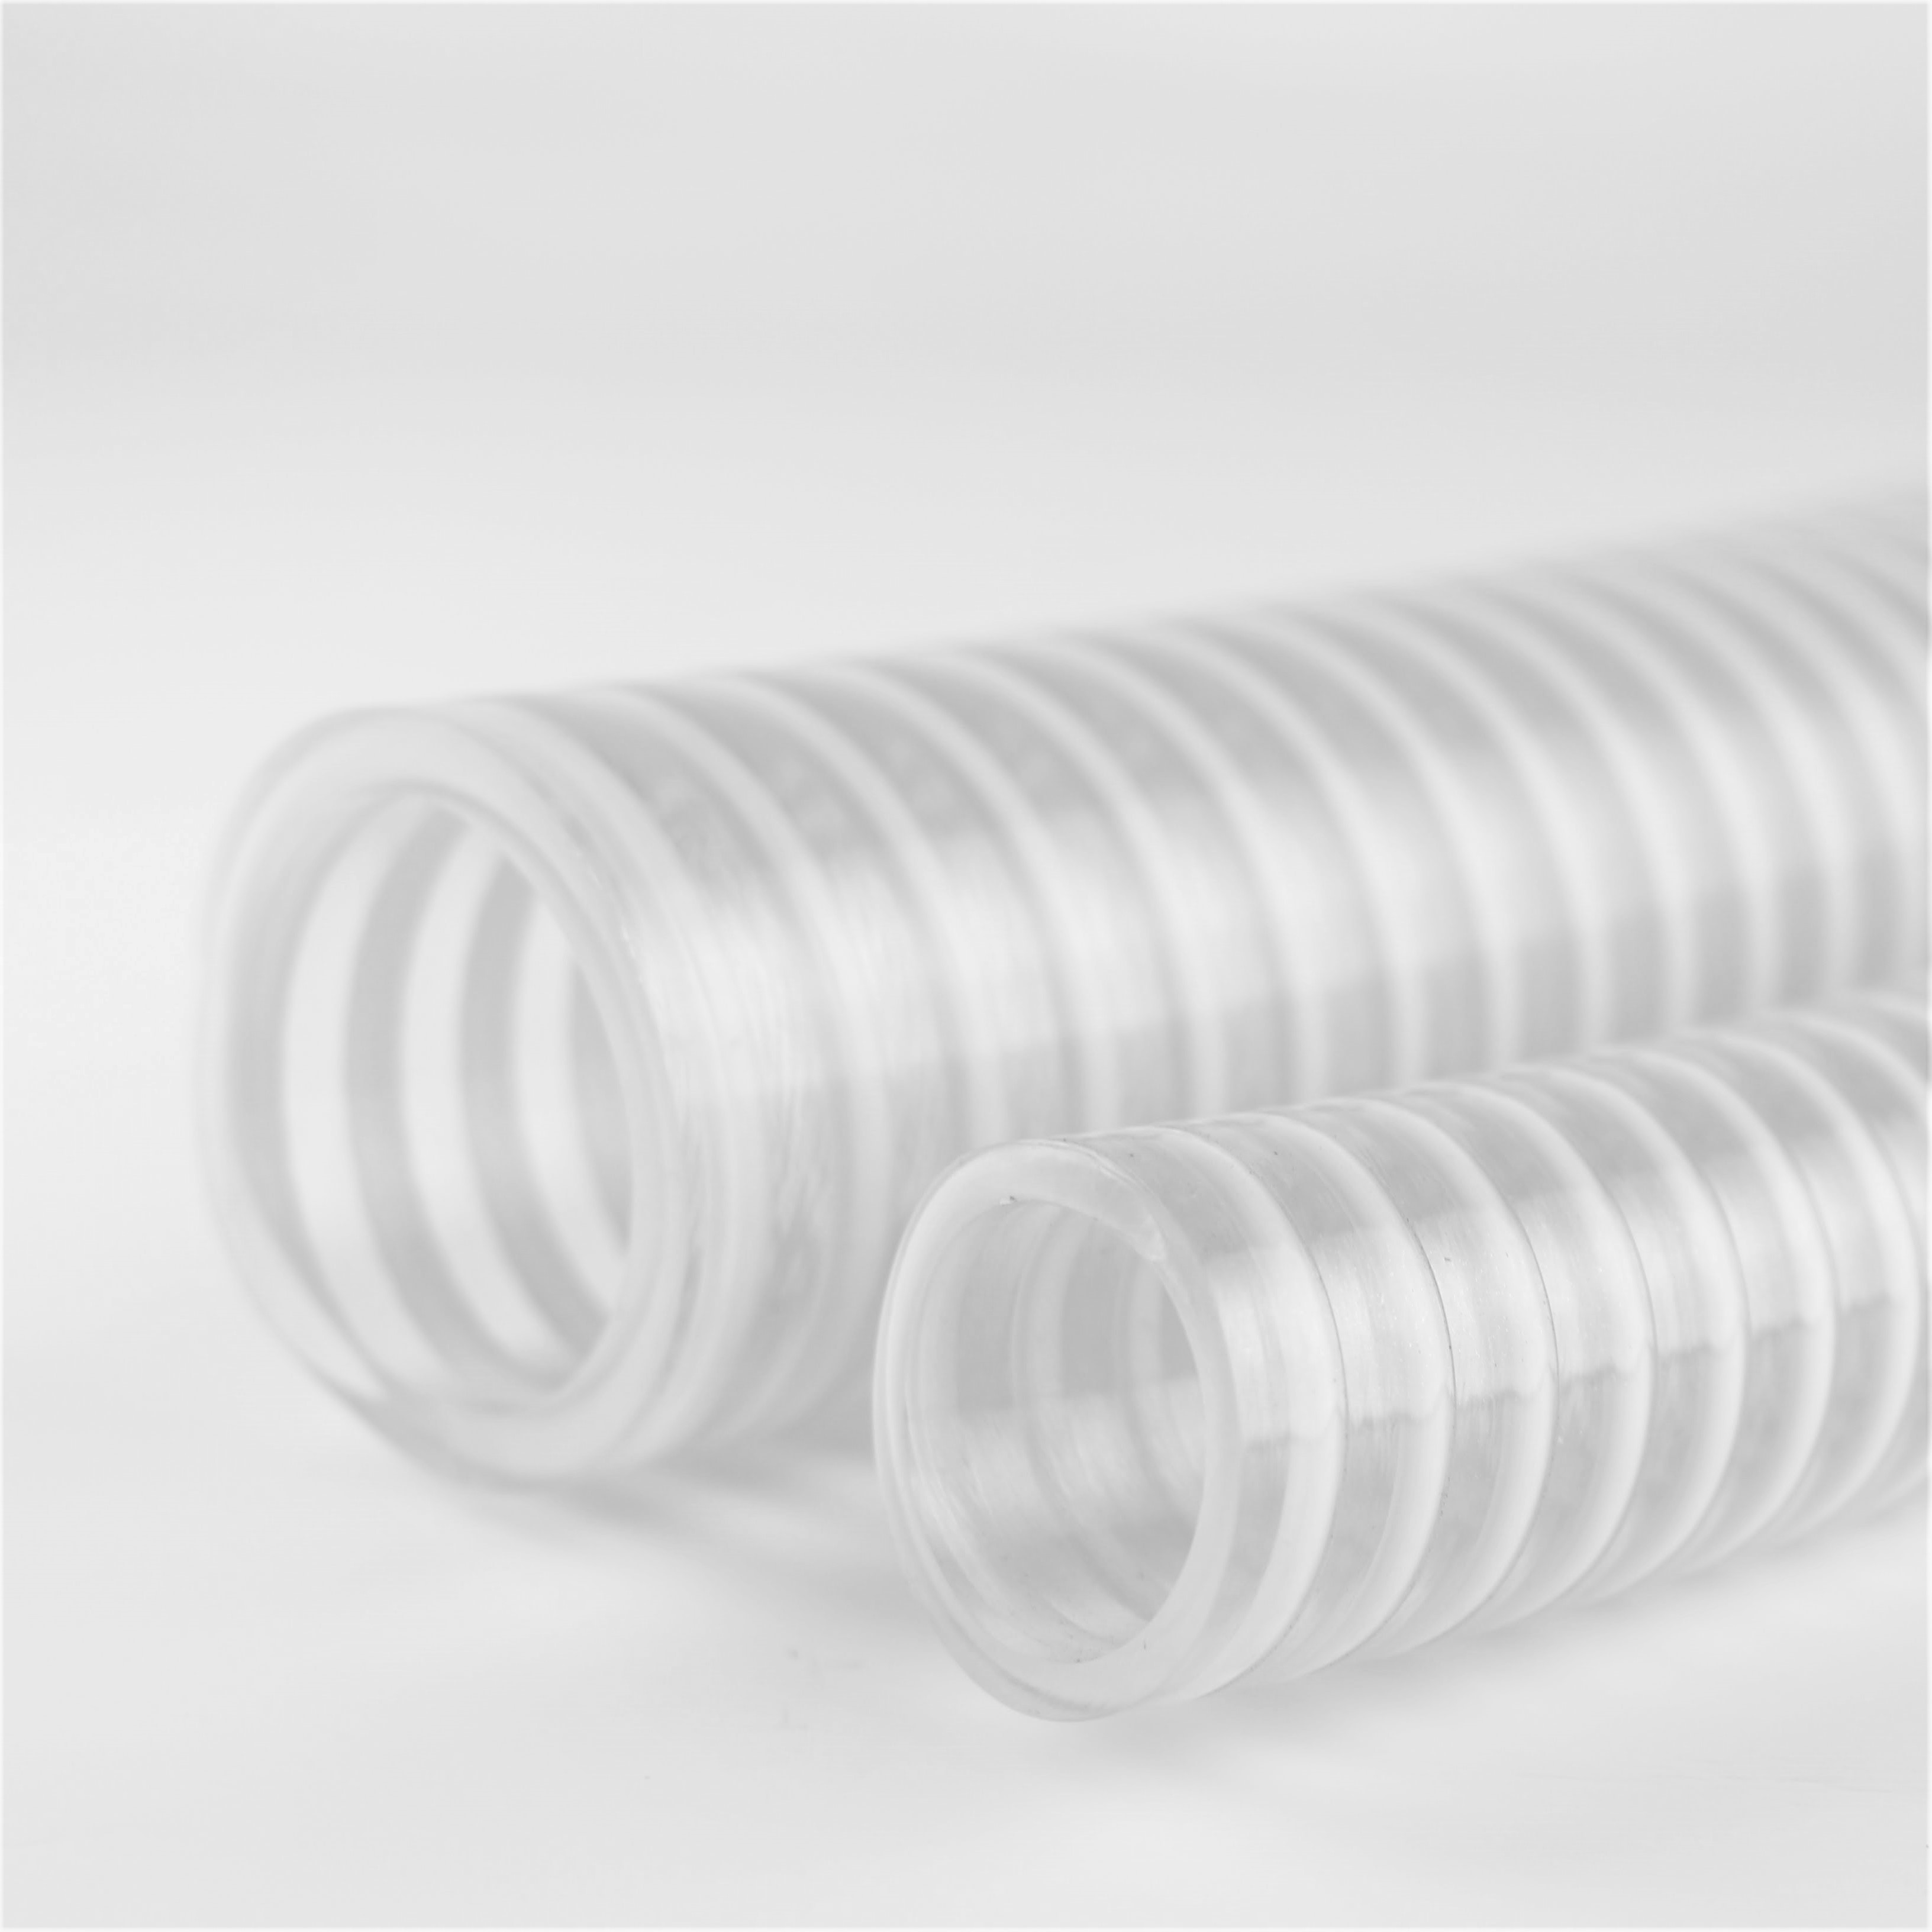 Tuyau flexible de refoulement - LD series - Toford - en PVC / pour